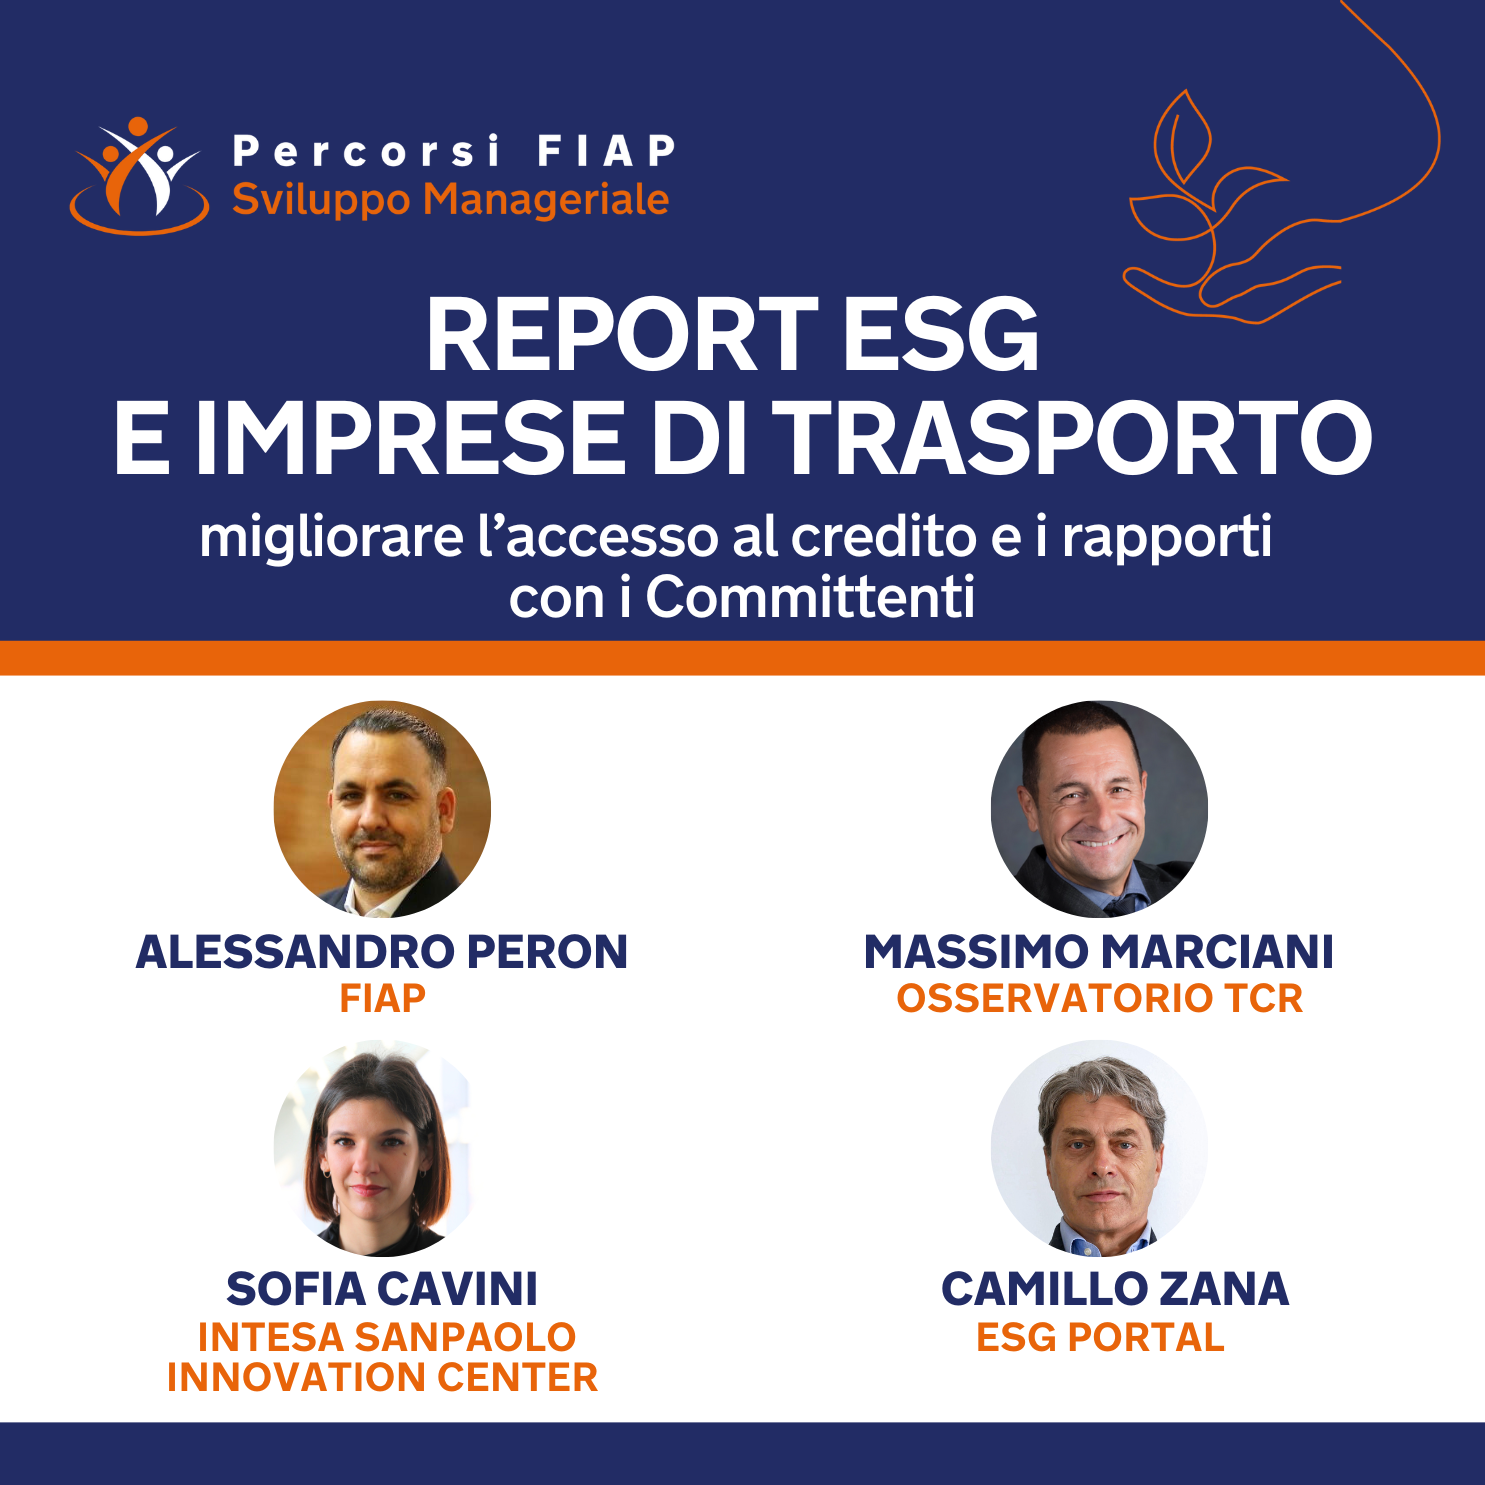 Corso Corso online - REPORT ESG E IMPRESE DI TRASPORTO migliorare l’accesso al credito e i rapporti con i Committenti.